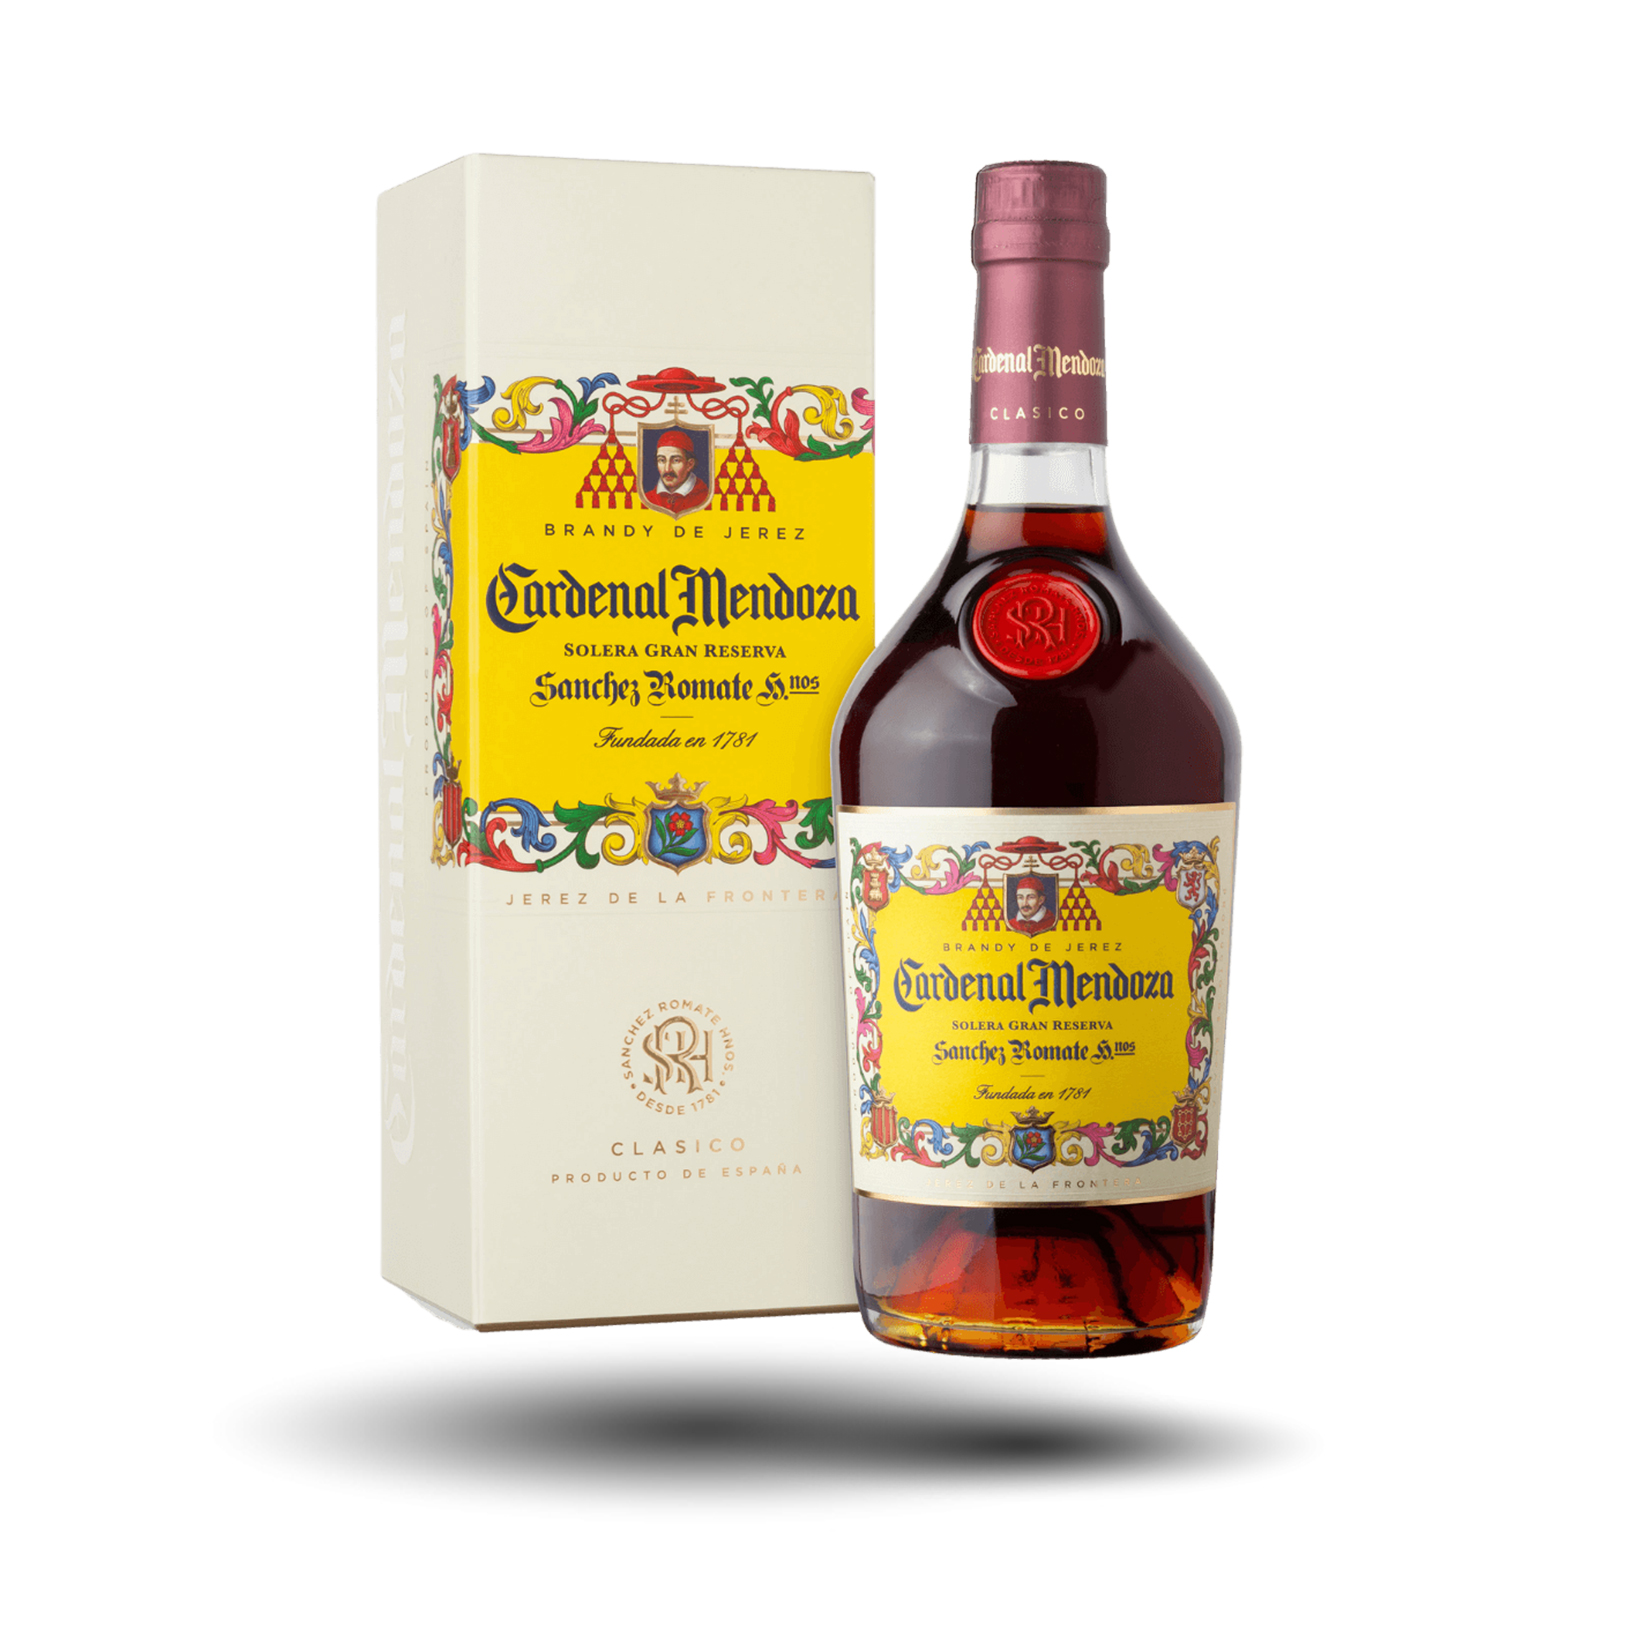 España - Brandy de Jerez, Cardenal Mendoza